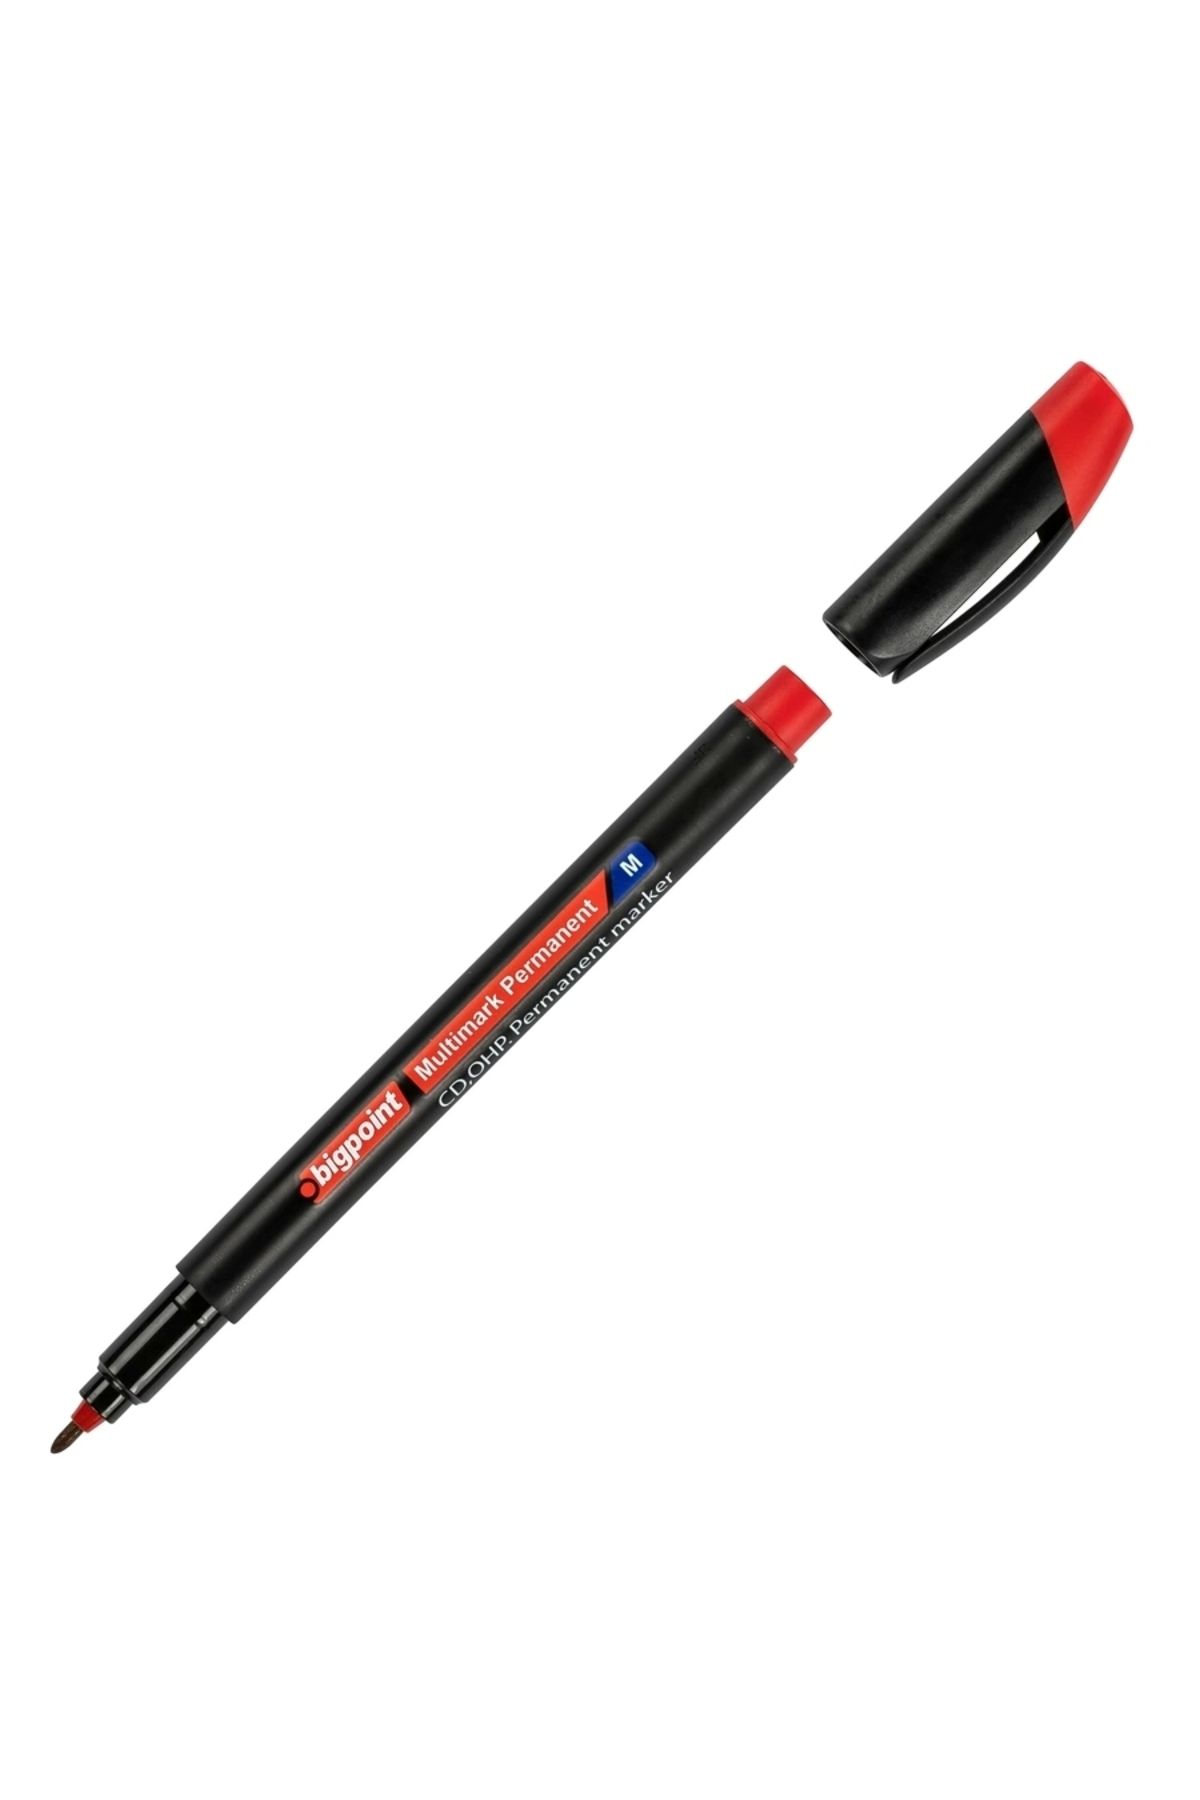 Bigpoint Ohp Permanent (ASETAT) Kalem M Kırmızı